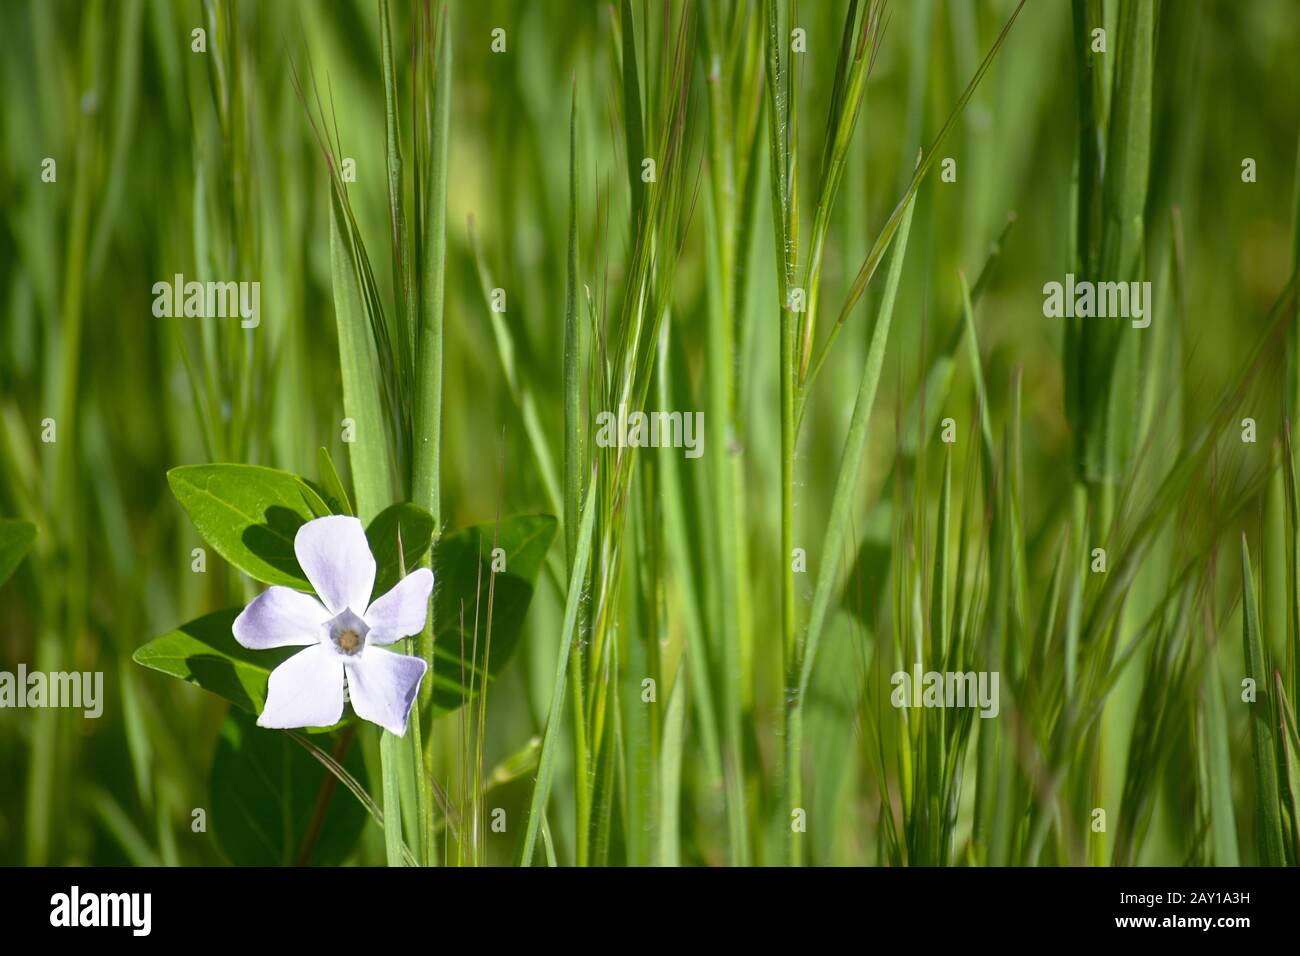 Bel fiore piccolo con erba verde lungo sullo sfondo con spazio per testo e logo Foto Stock